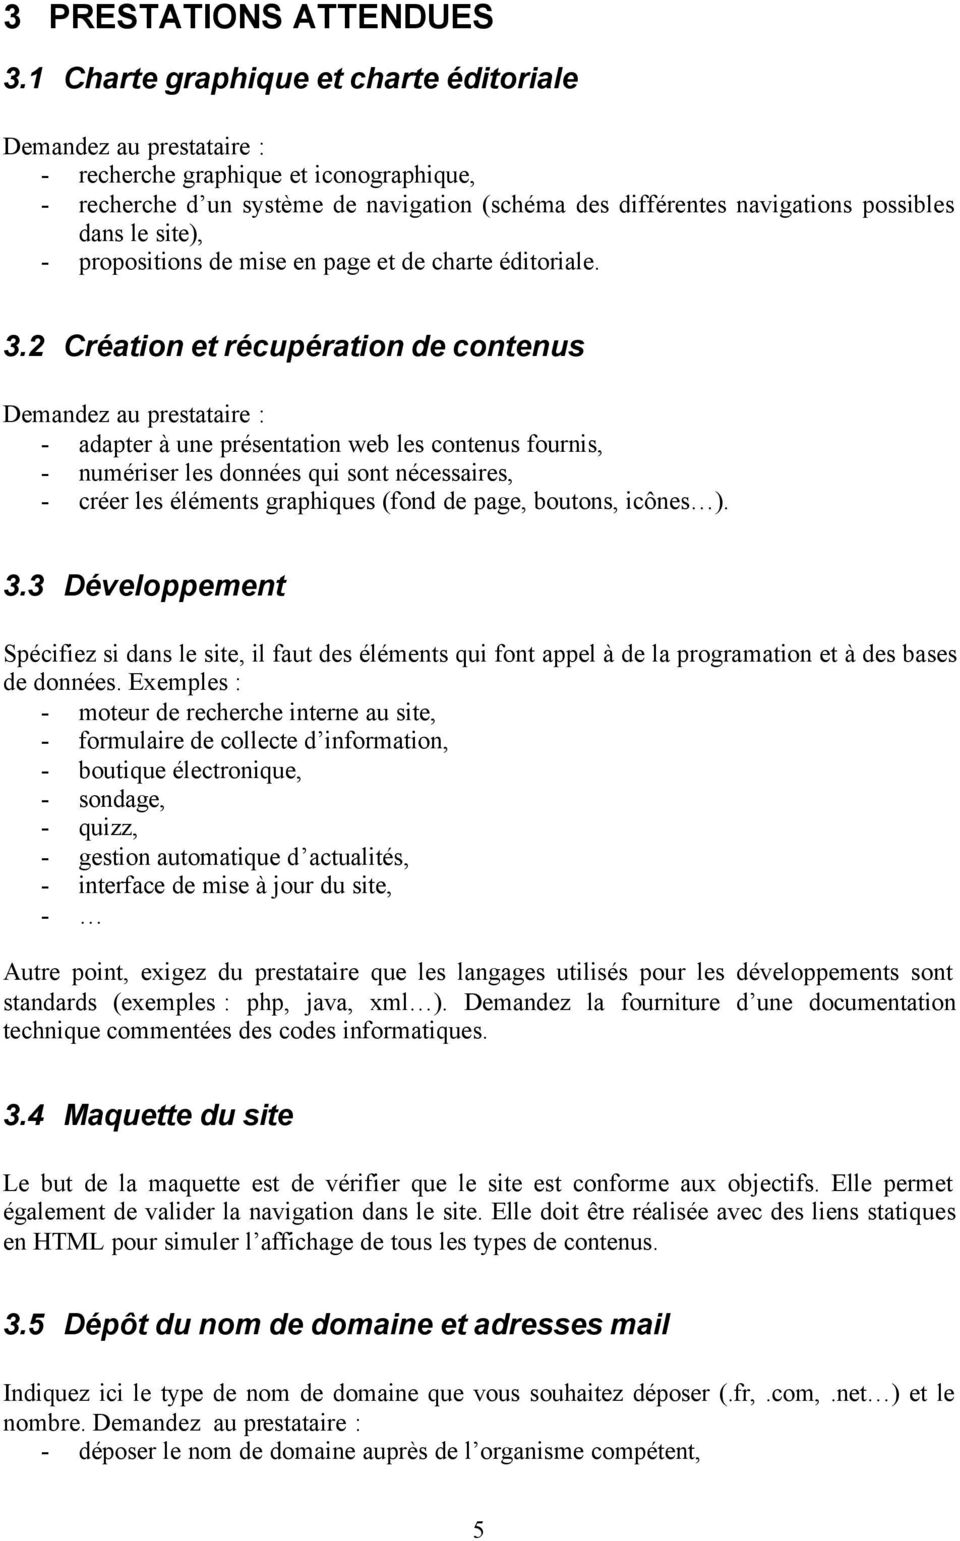 site), - propositions de mise en page et de charte éditoriale. 3.